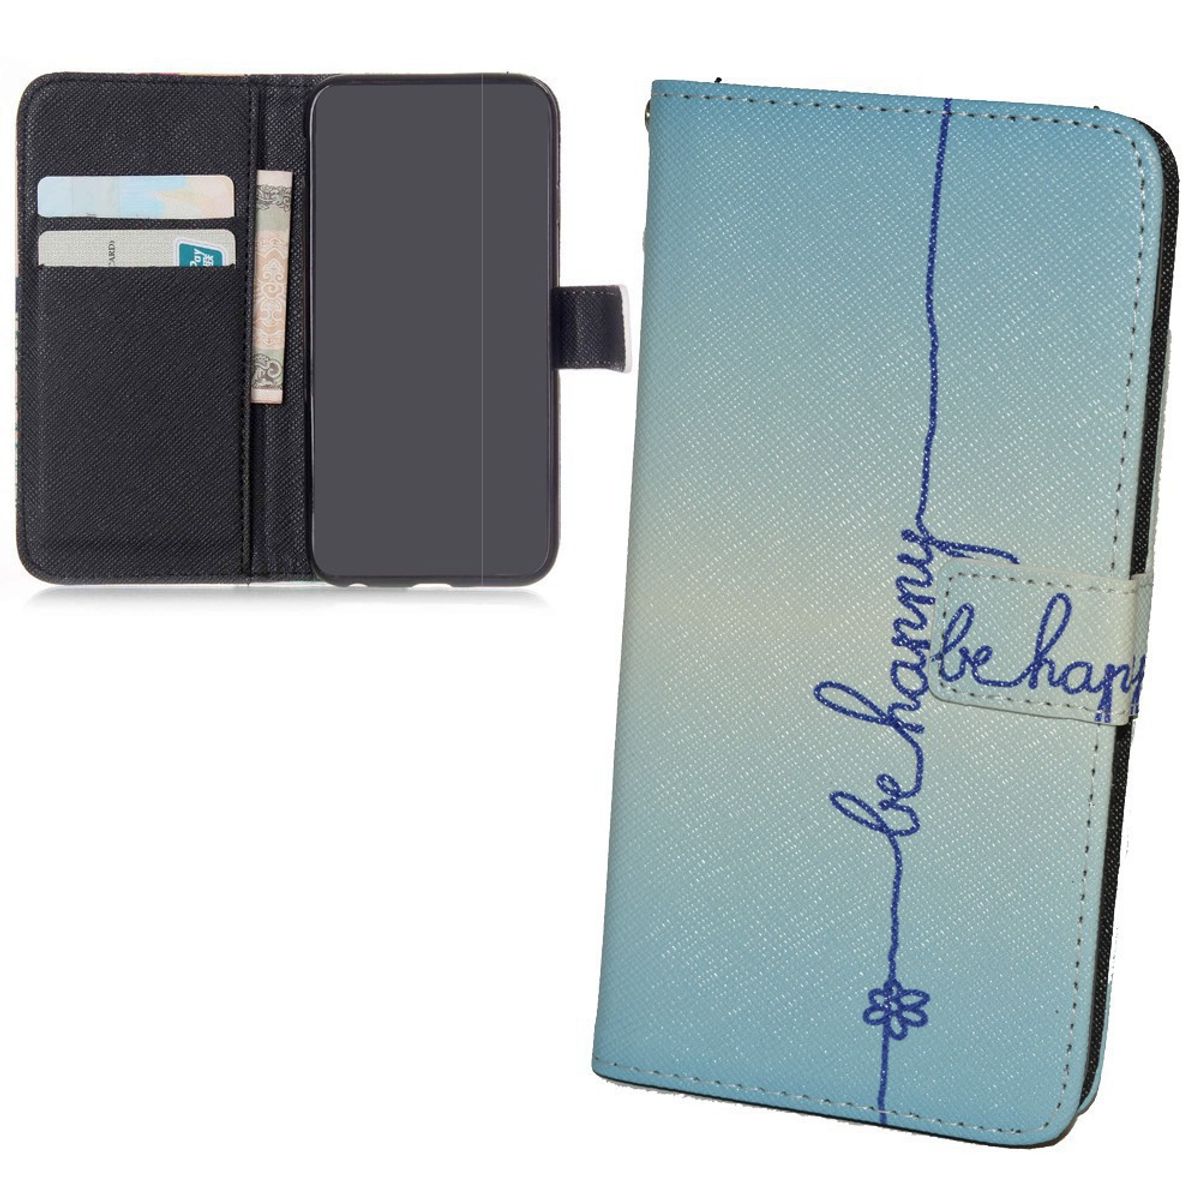 König Design Handyhülle kompatibel mit Samsung Galaxy S6 Schutztasche Wallet Cover 360 Case Blau